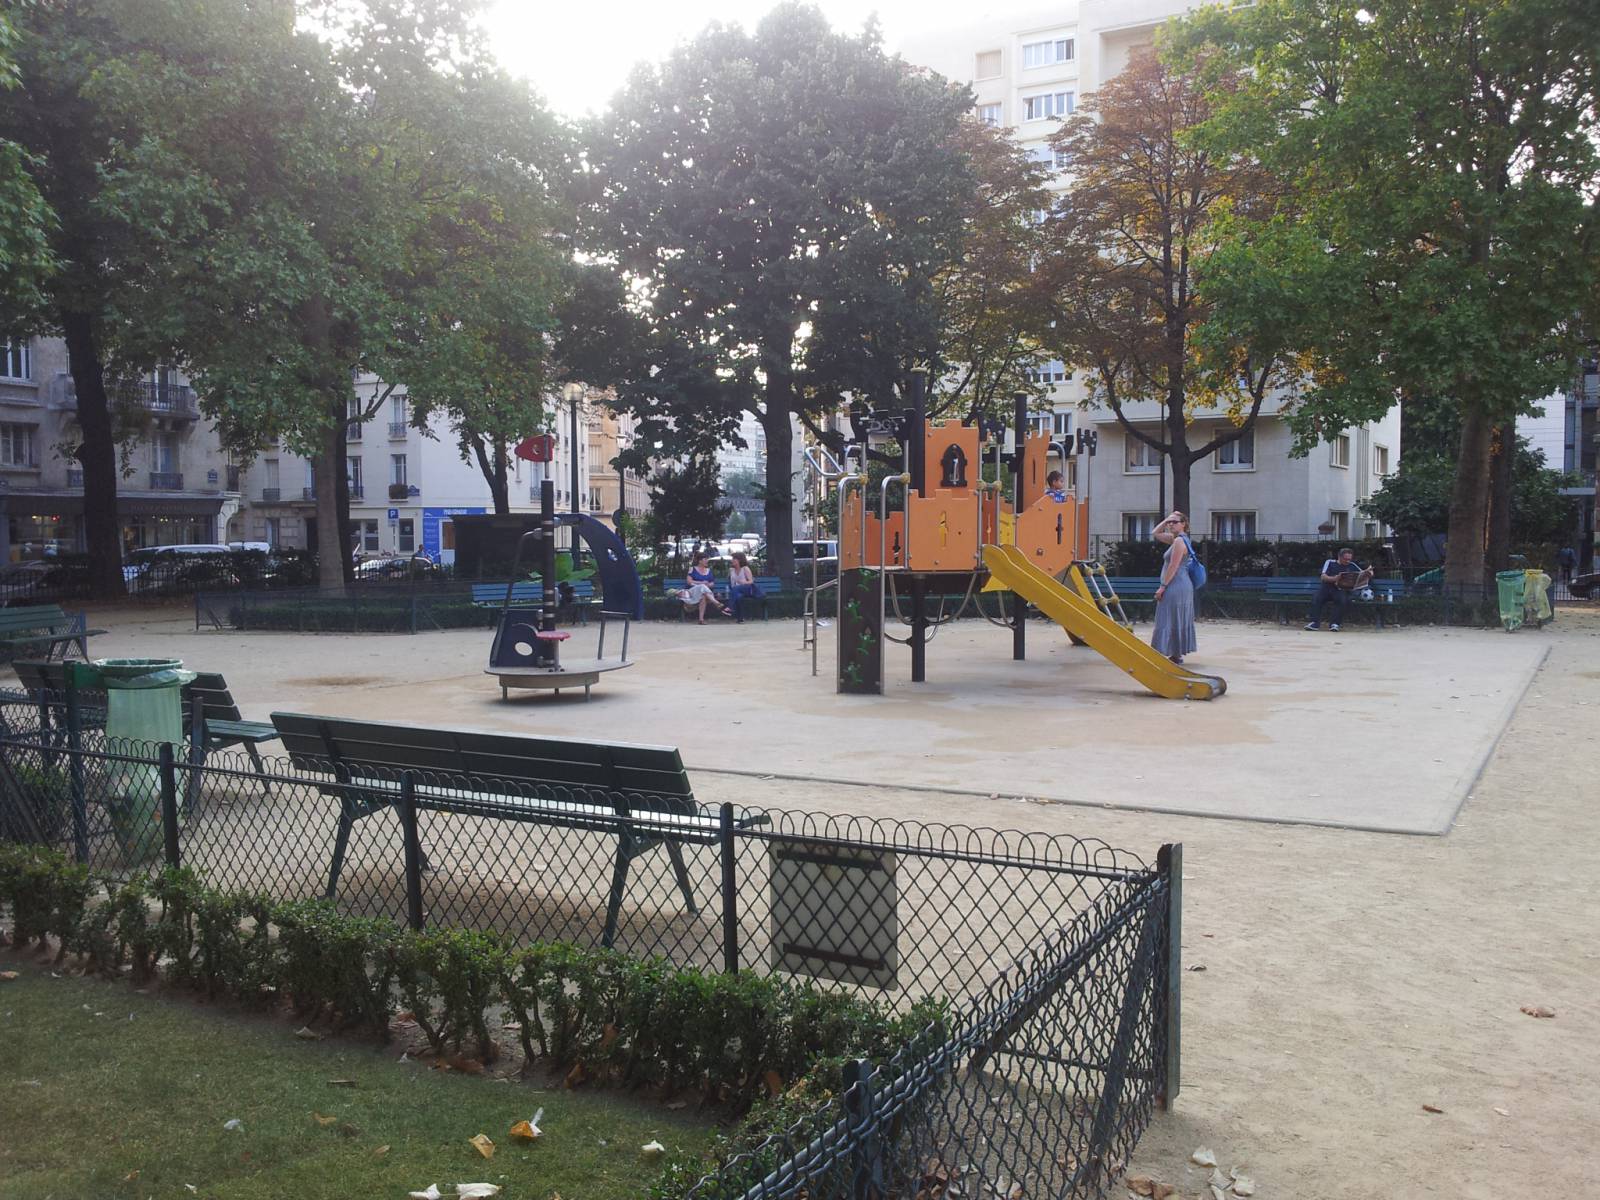 Spielplatz Place Dupleix in Paris